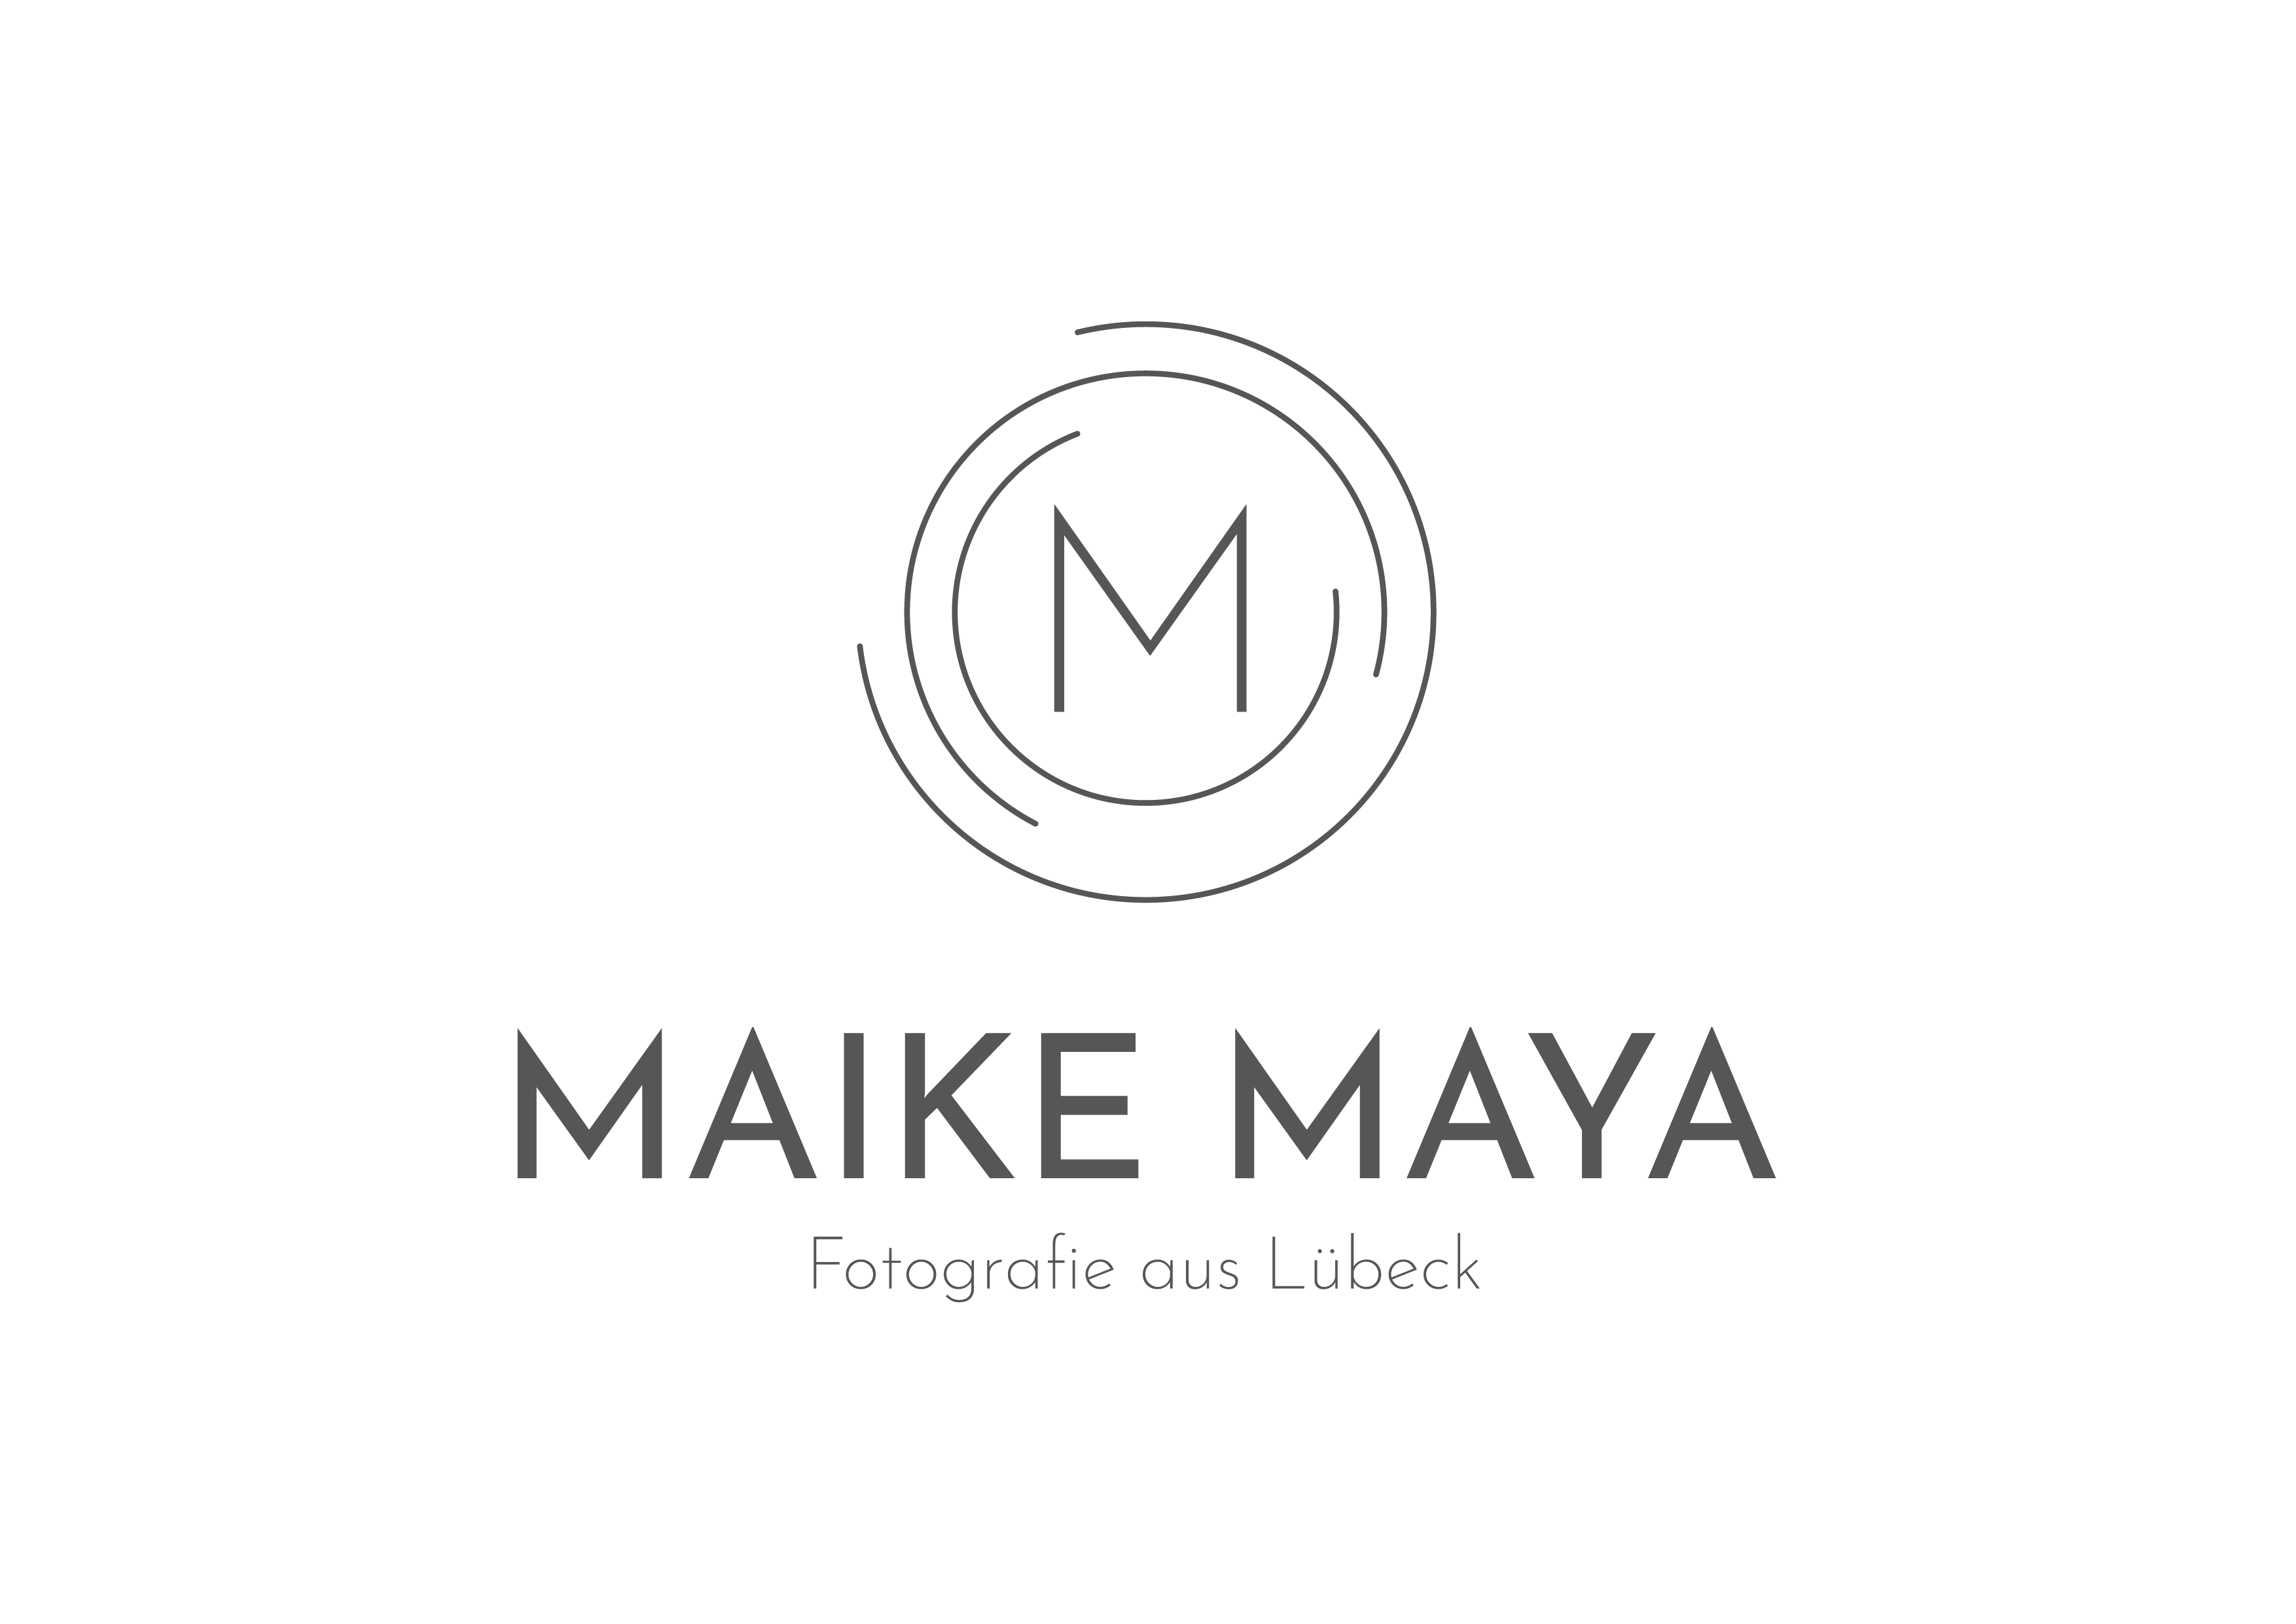 Maike Maya